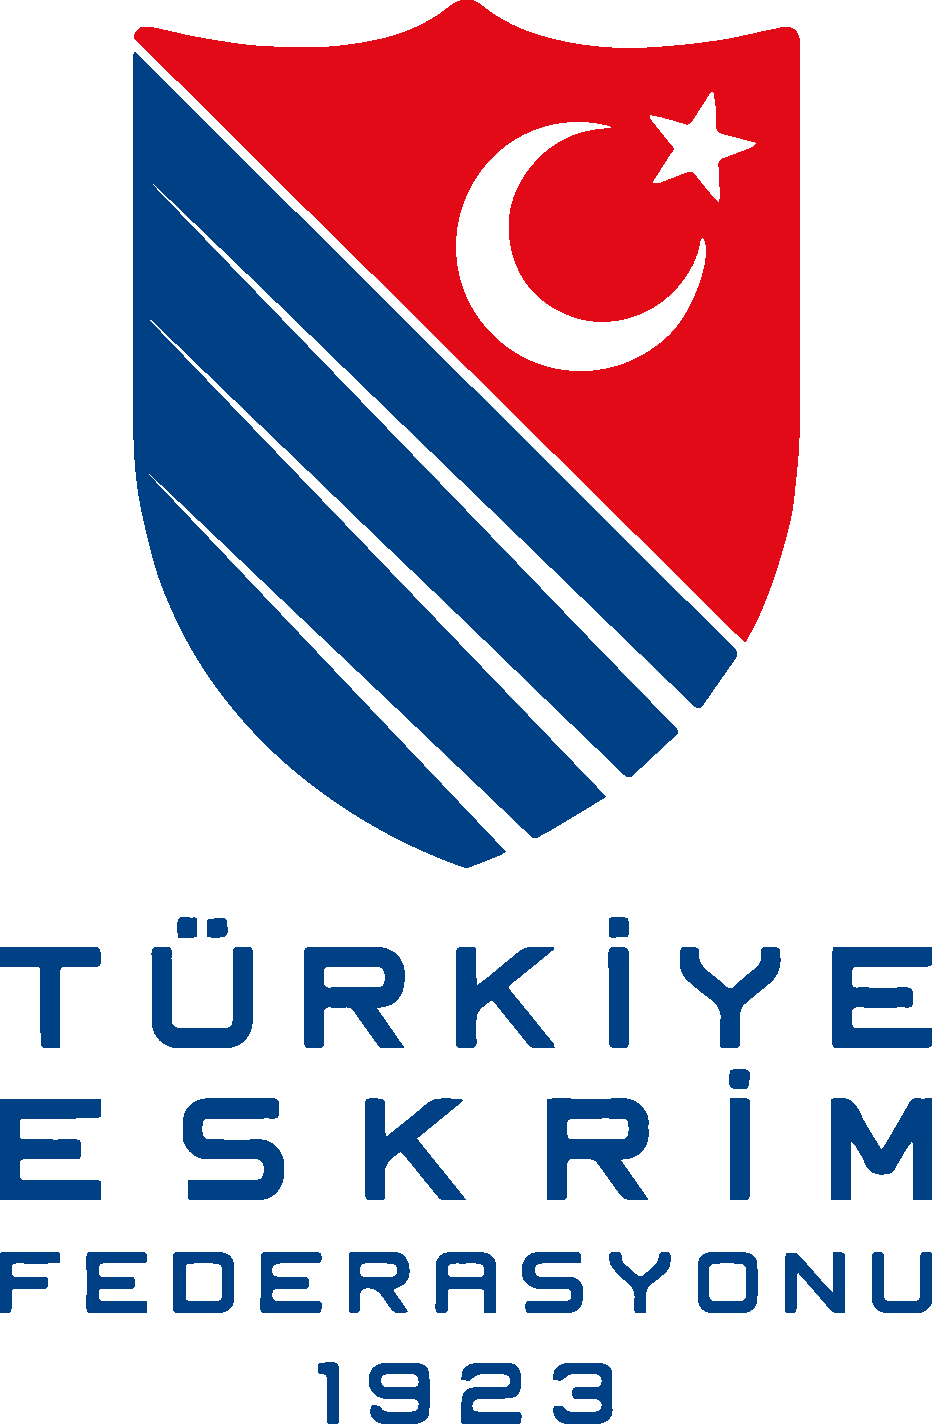 Türkiye Eskrim Federasyonu Logo png